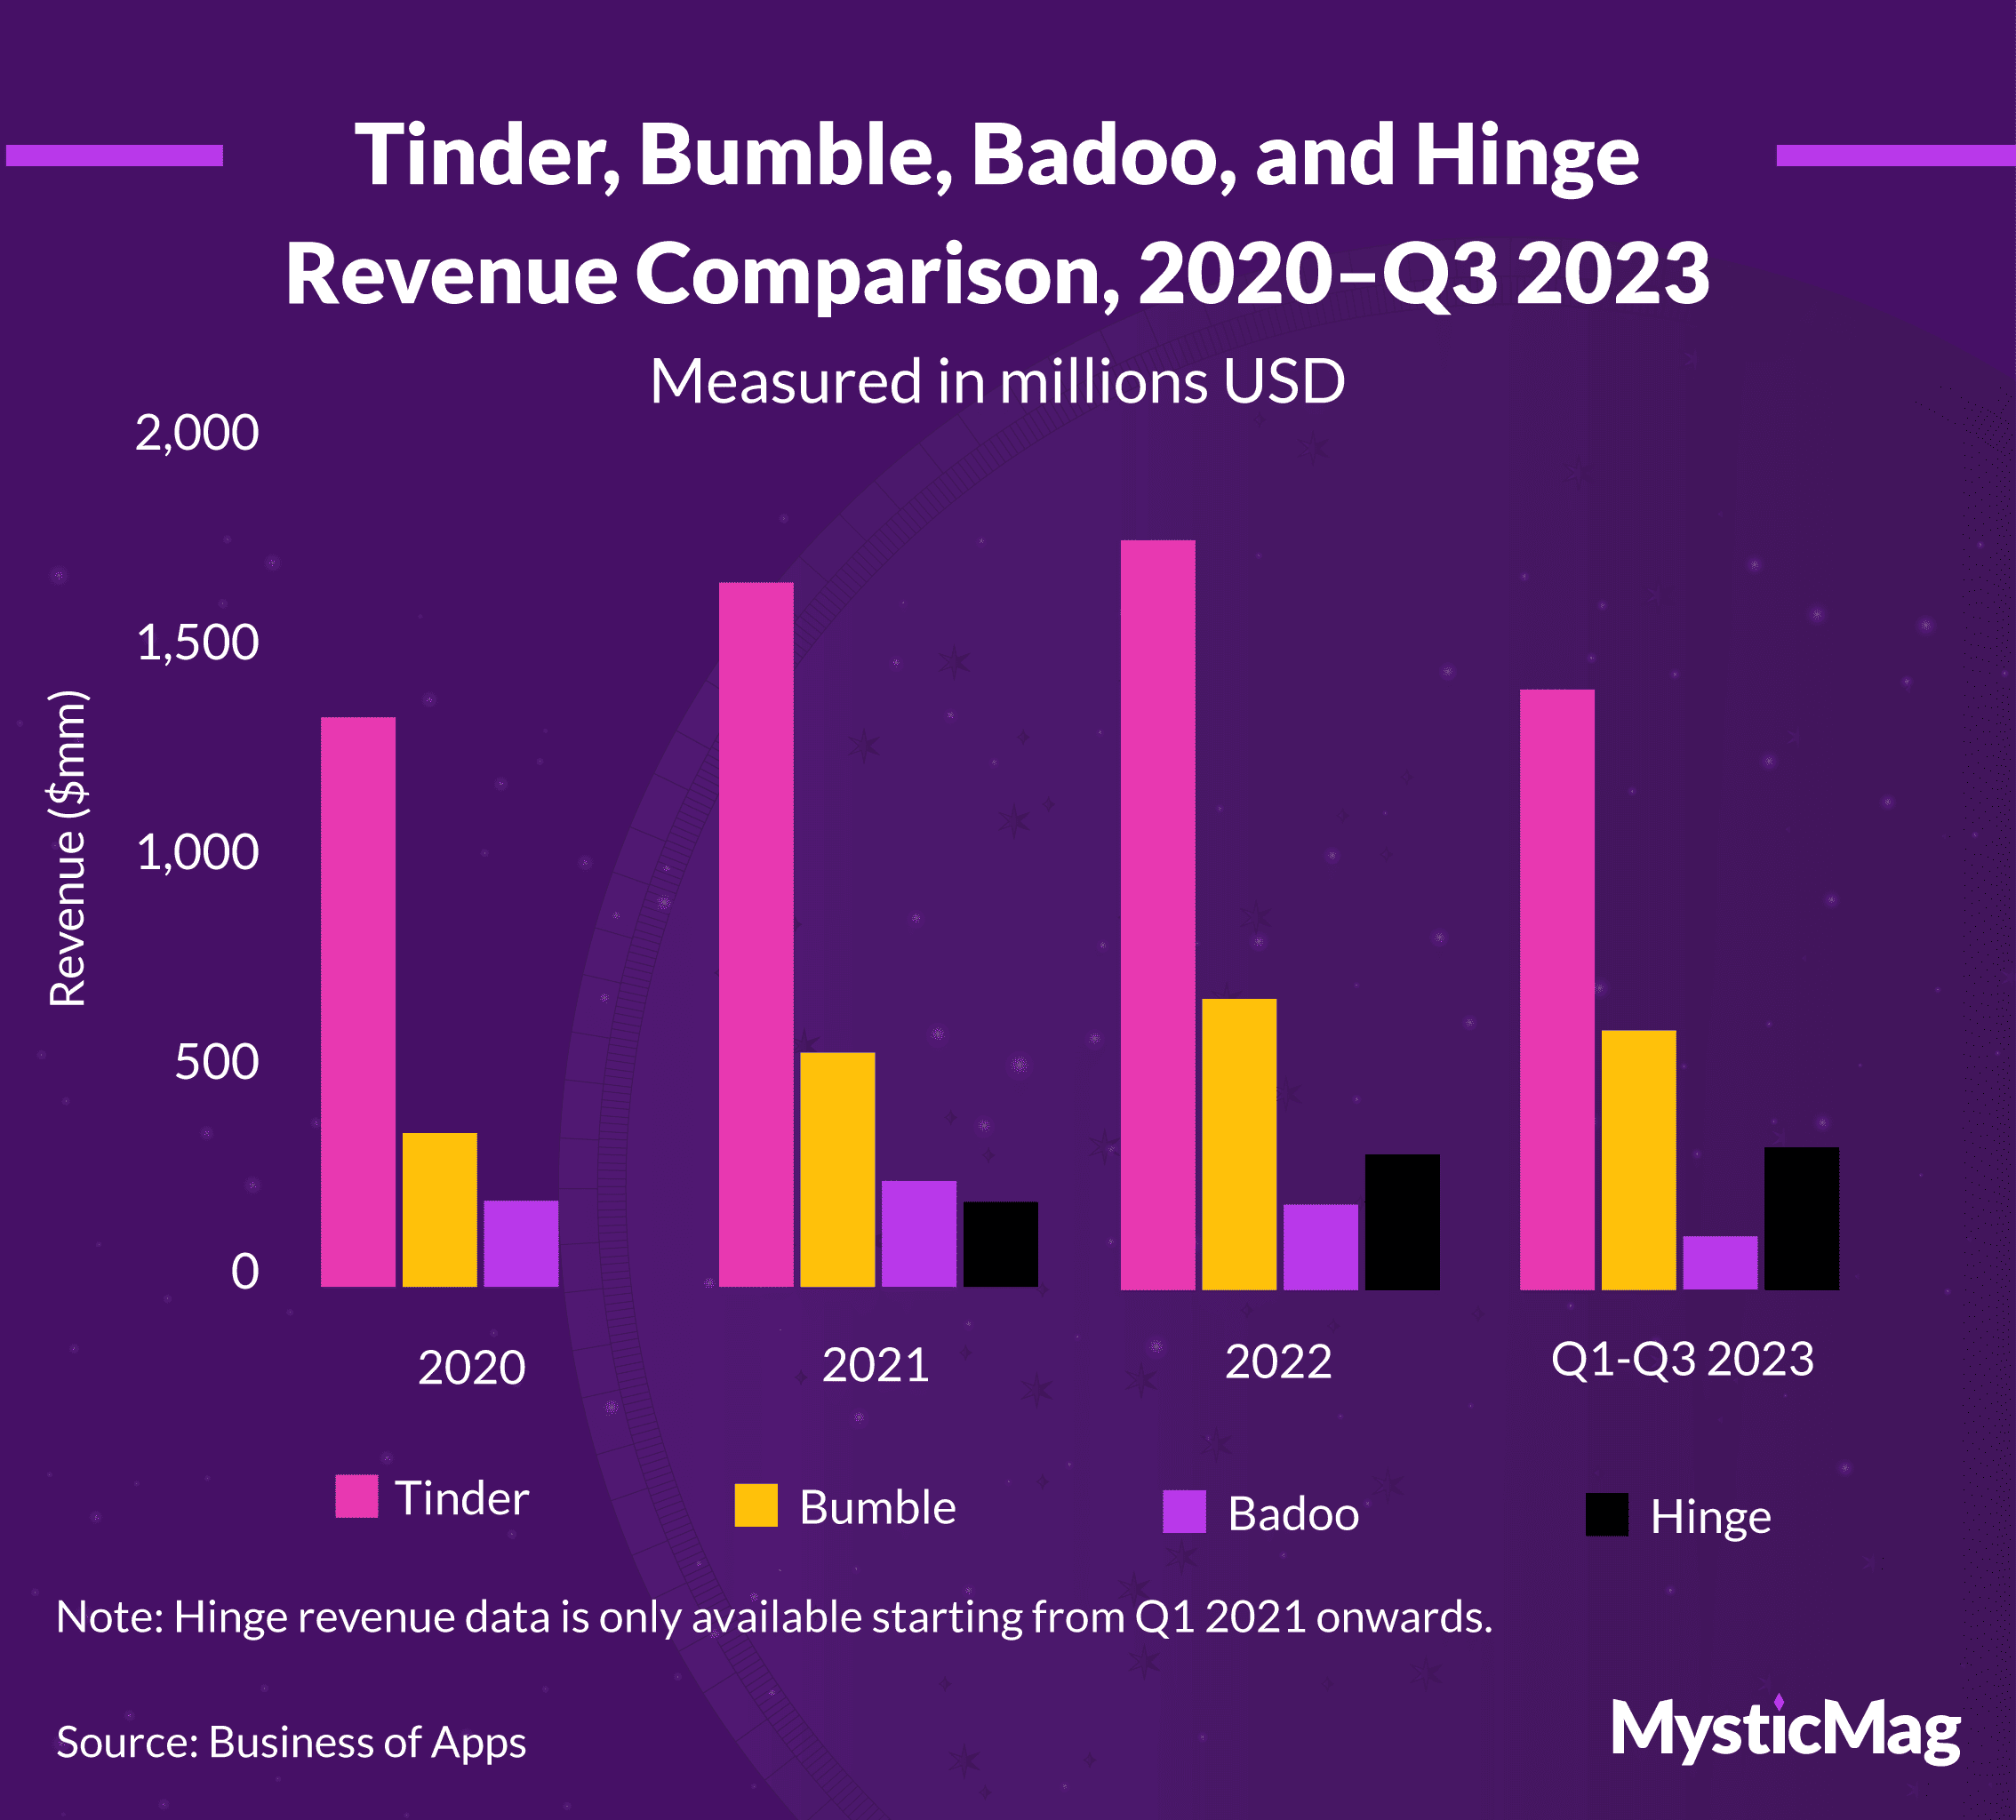 Revenue comparison of Tinder, Bumble, Badoo, & Hinge, 2020-Q3 2023